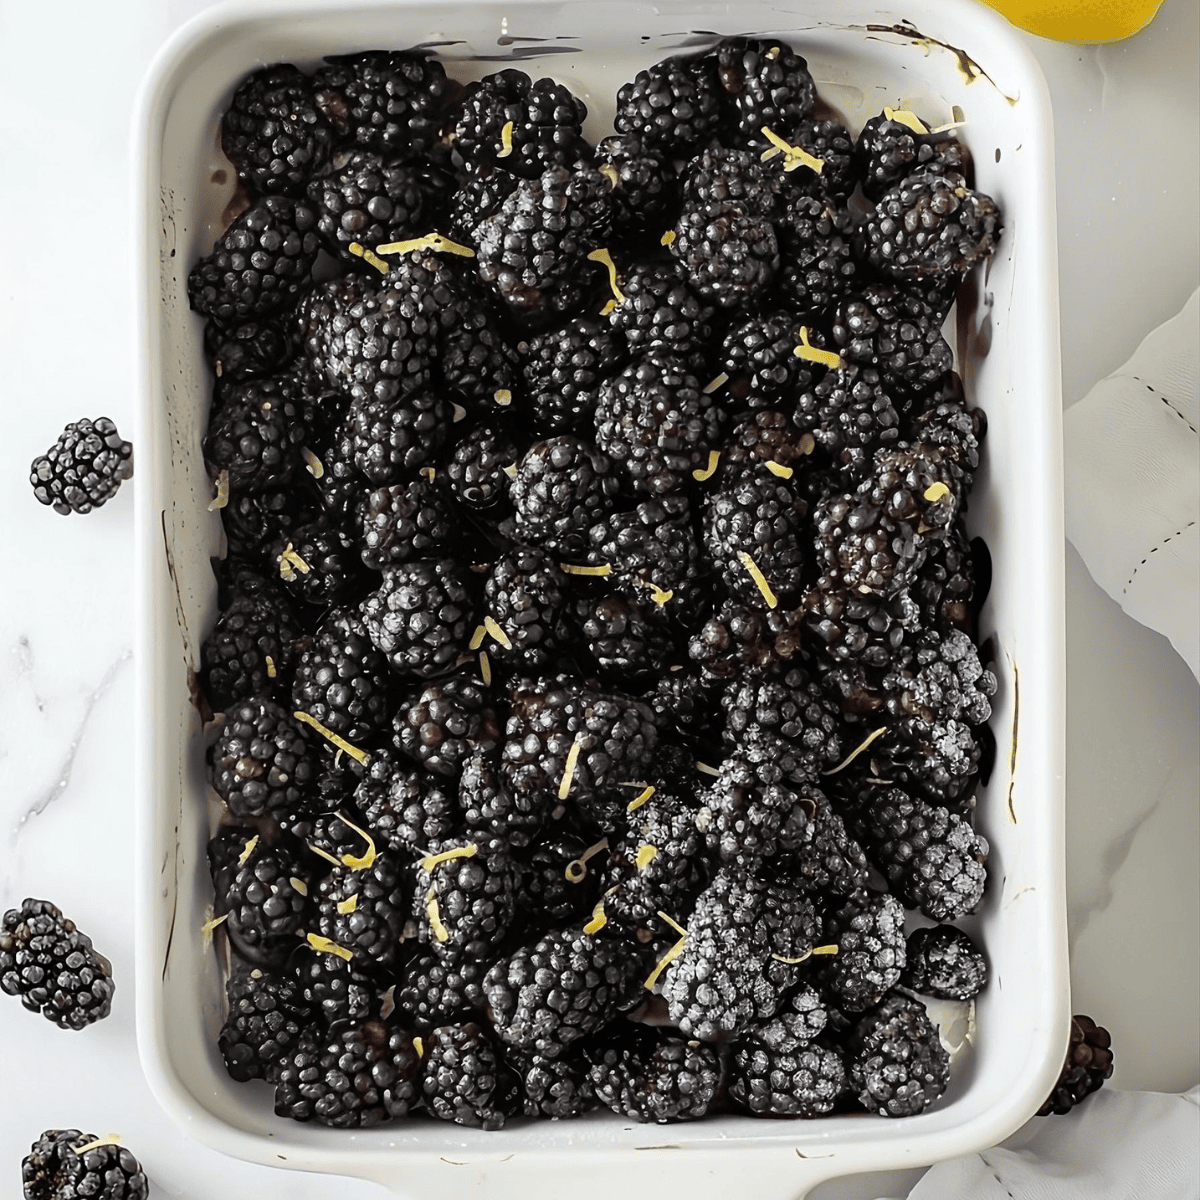 Blackberries with lemon zest in baking dish.